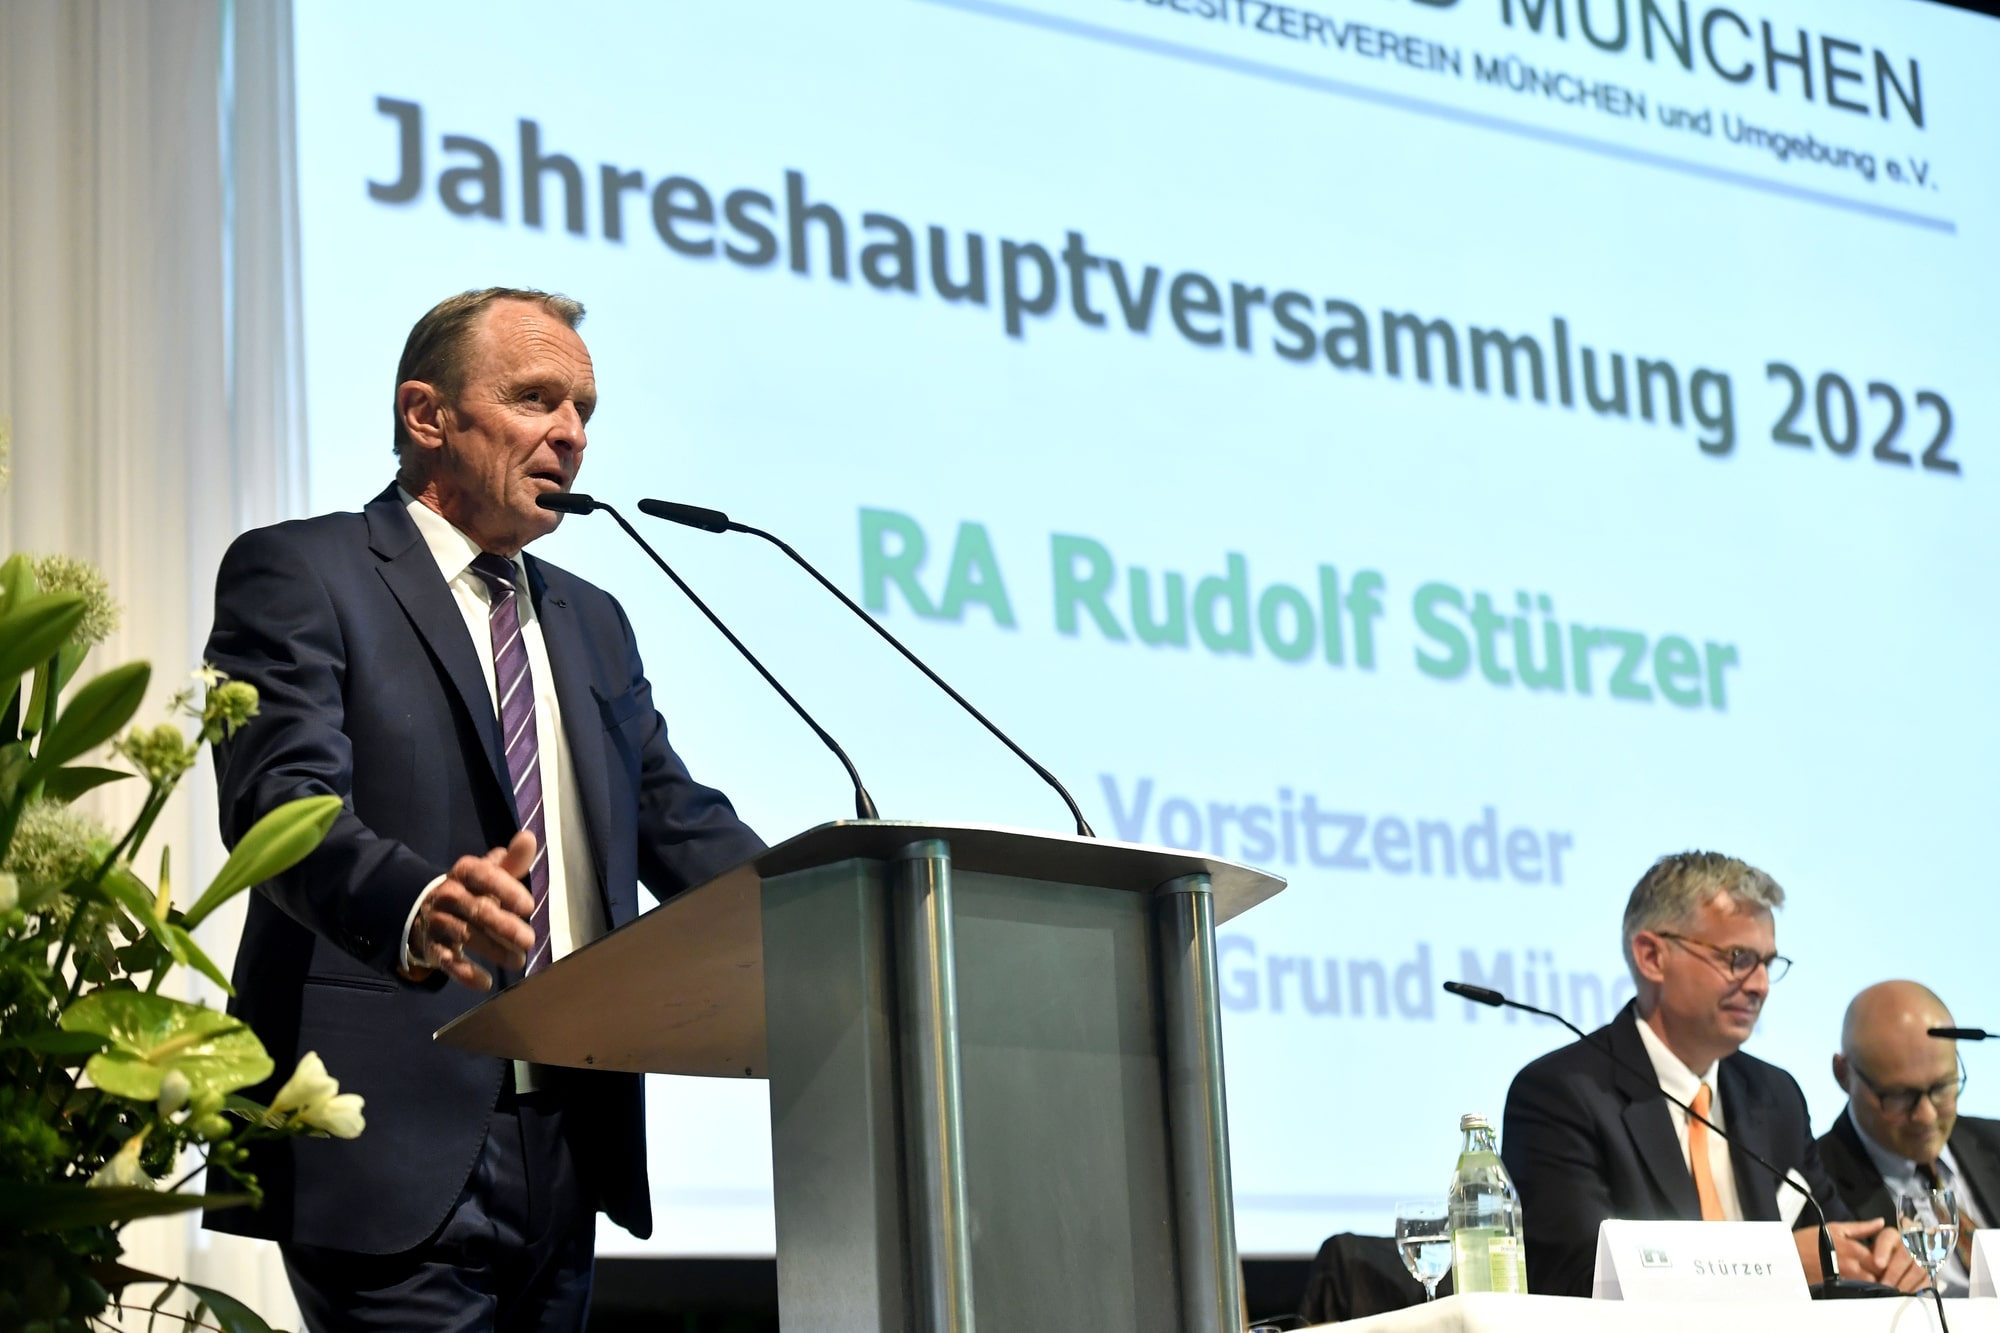 RA Rudolf Stürzer blickt zurück auf ein erfolgreiches Geschäftsjahr und deutlich gestiegene Mitgliederzahlen